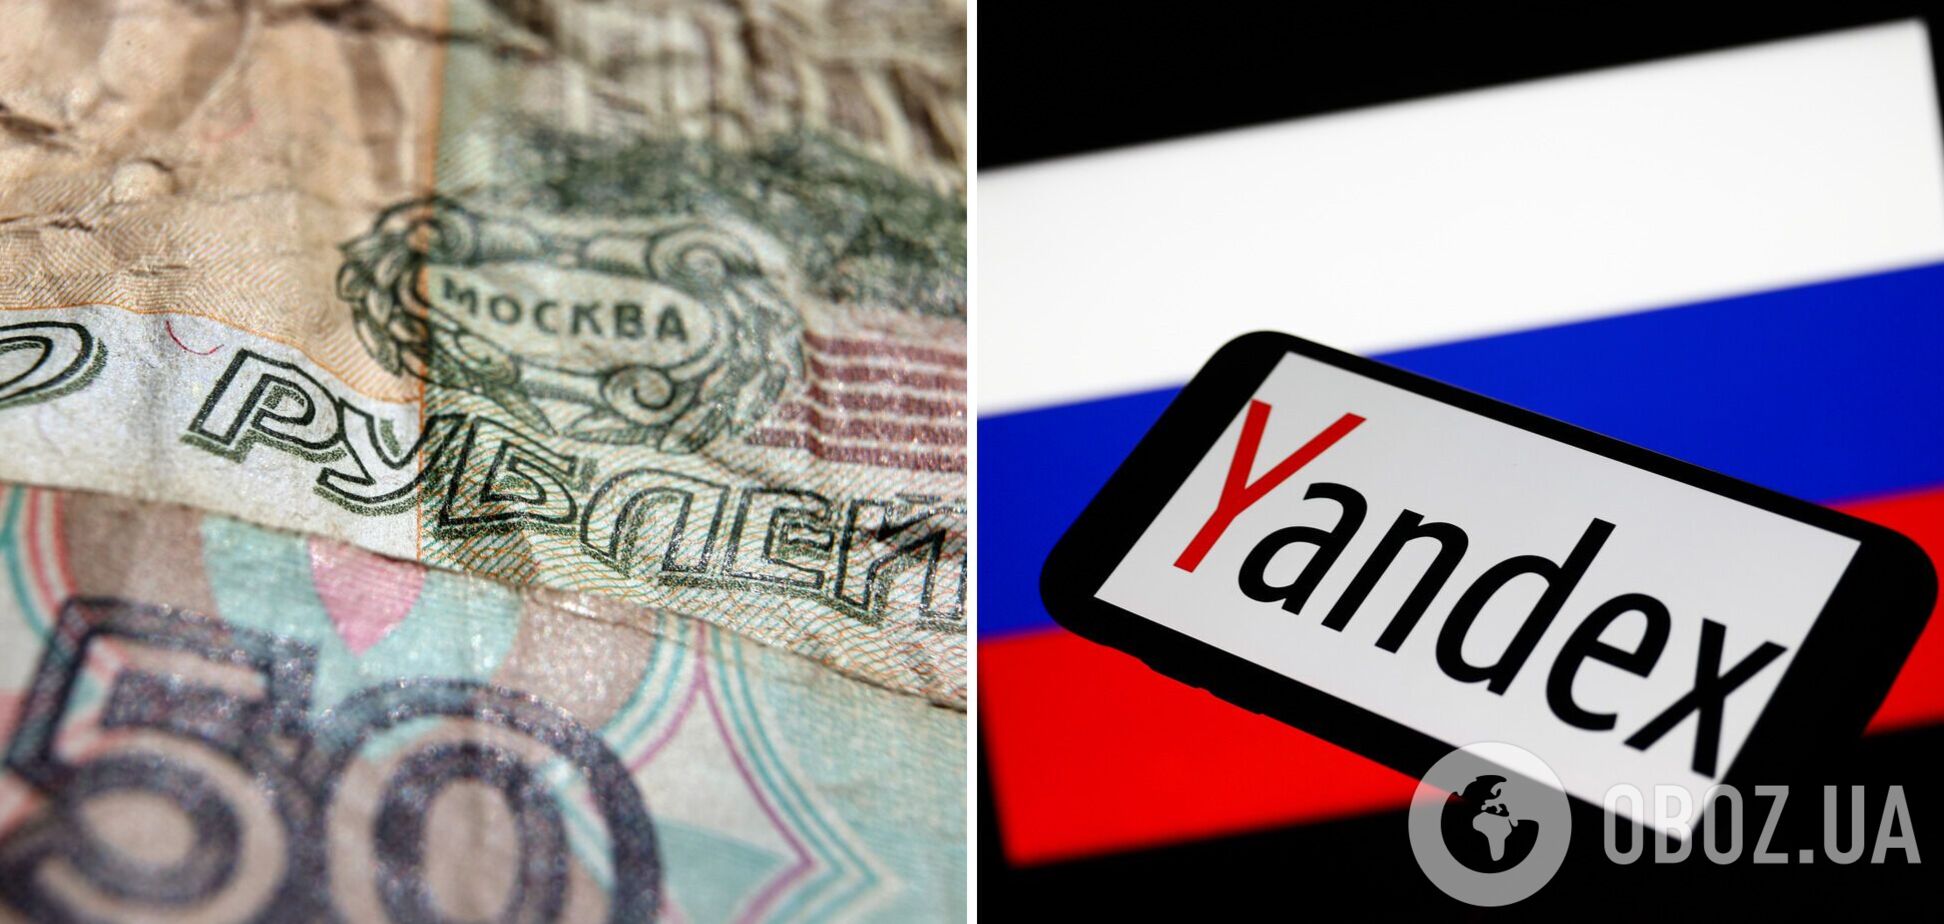 'Яндексу' пришлось сокращать инвестиции